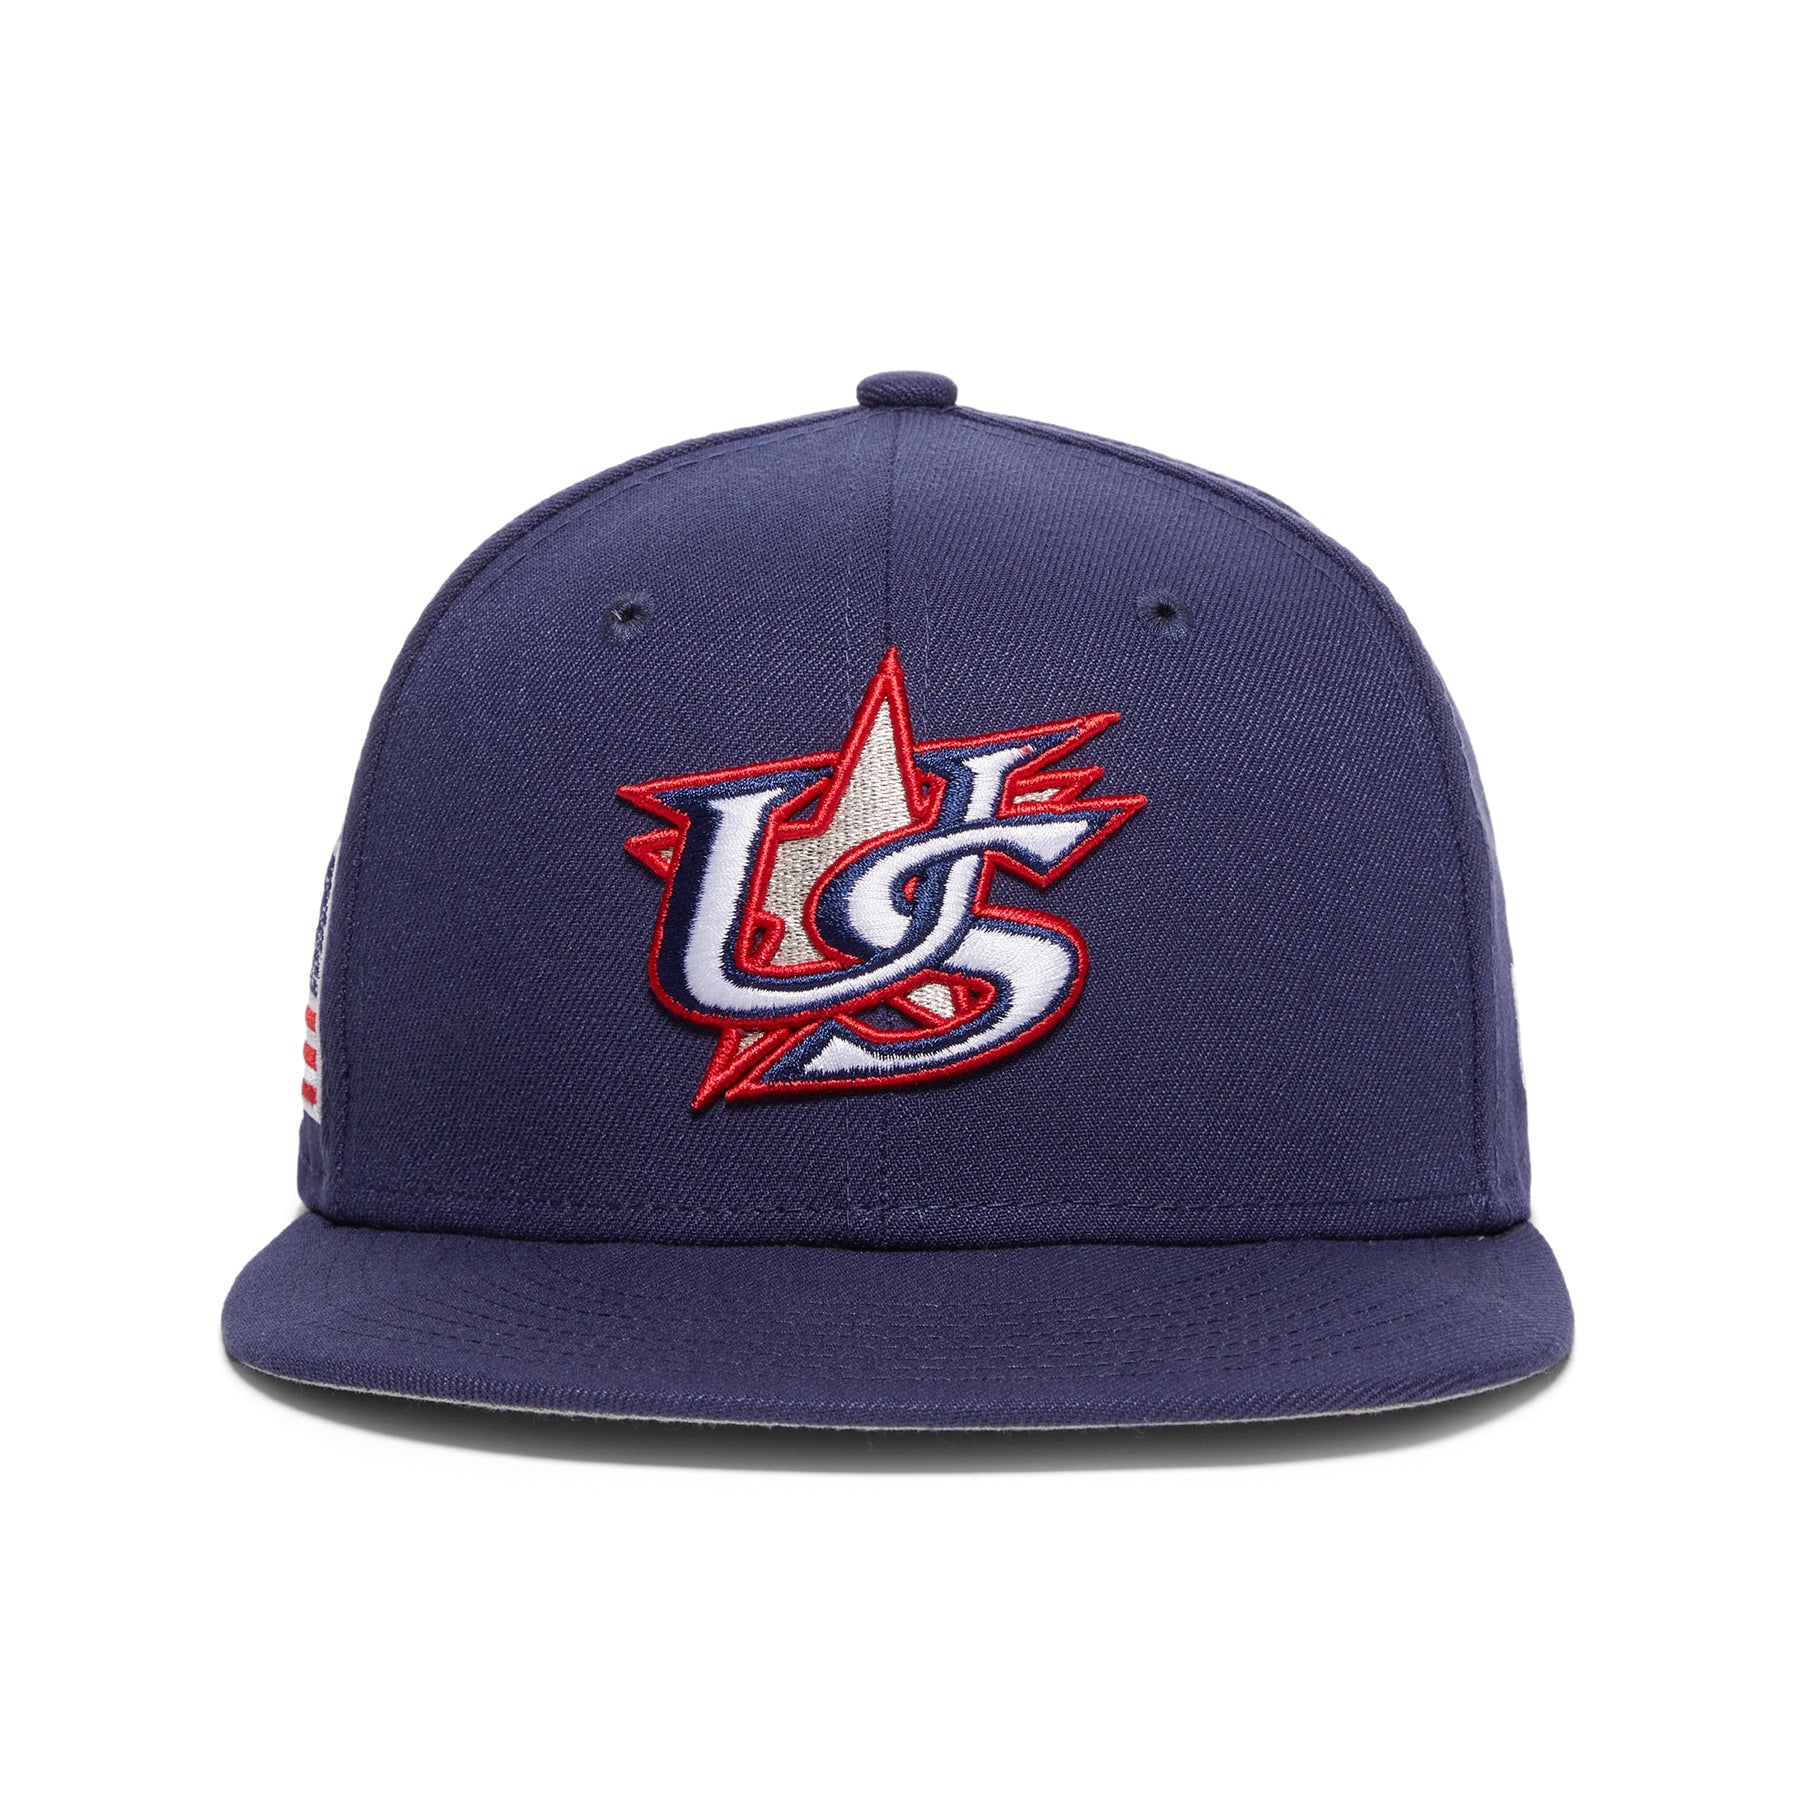 New Era 59FIFTY 2023 World Baseball Classic USA Fitted Hat 7 7/8